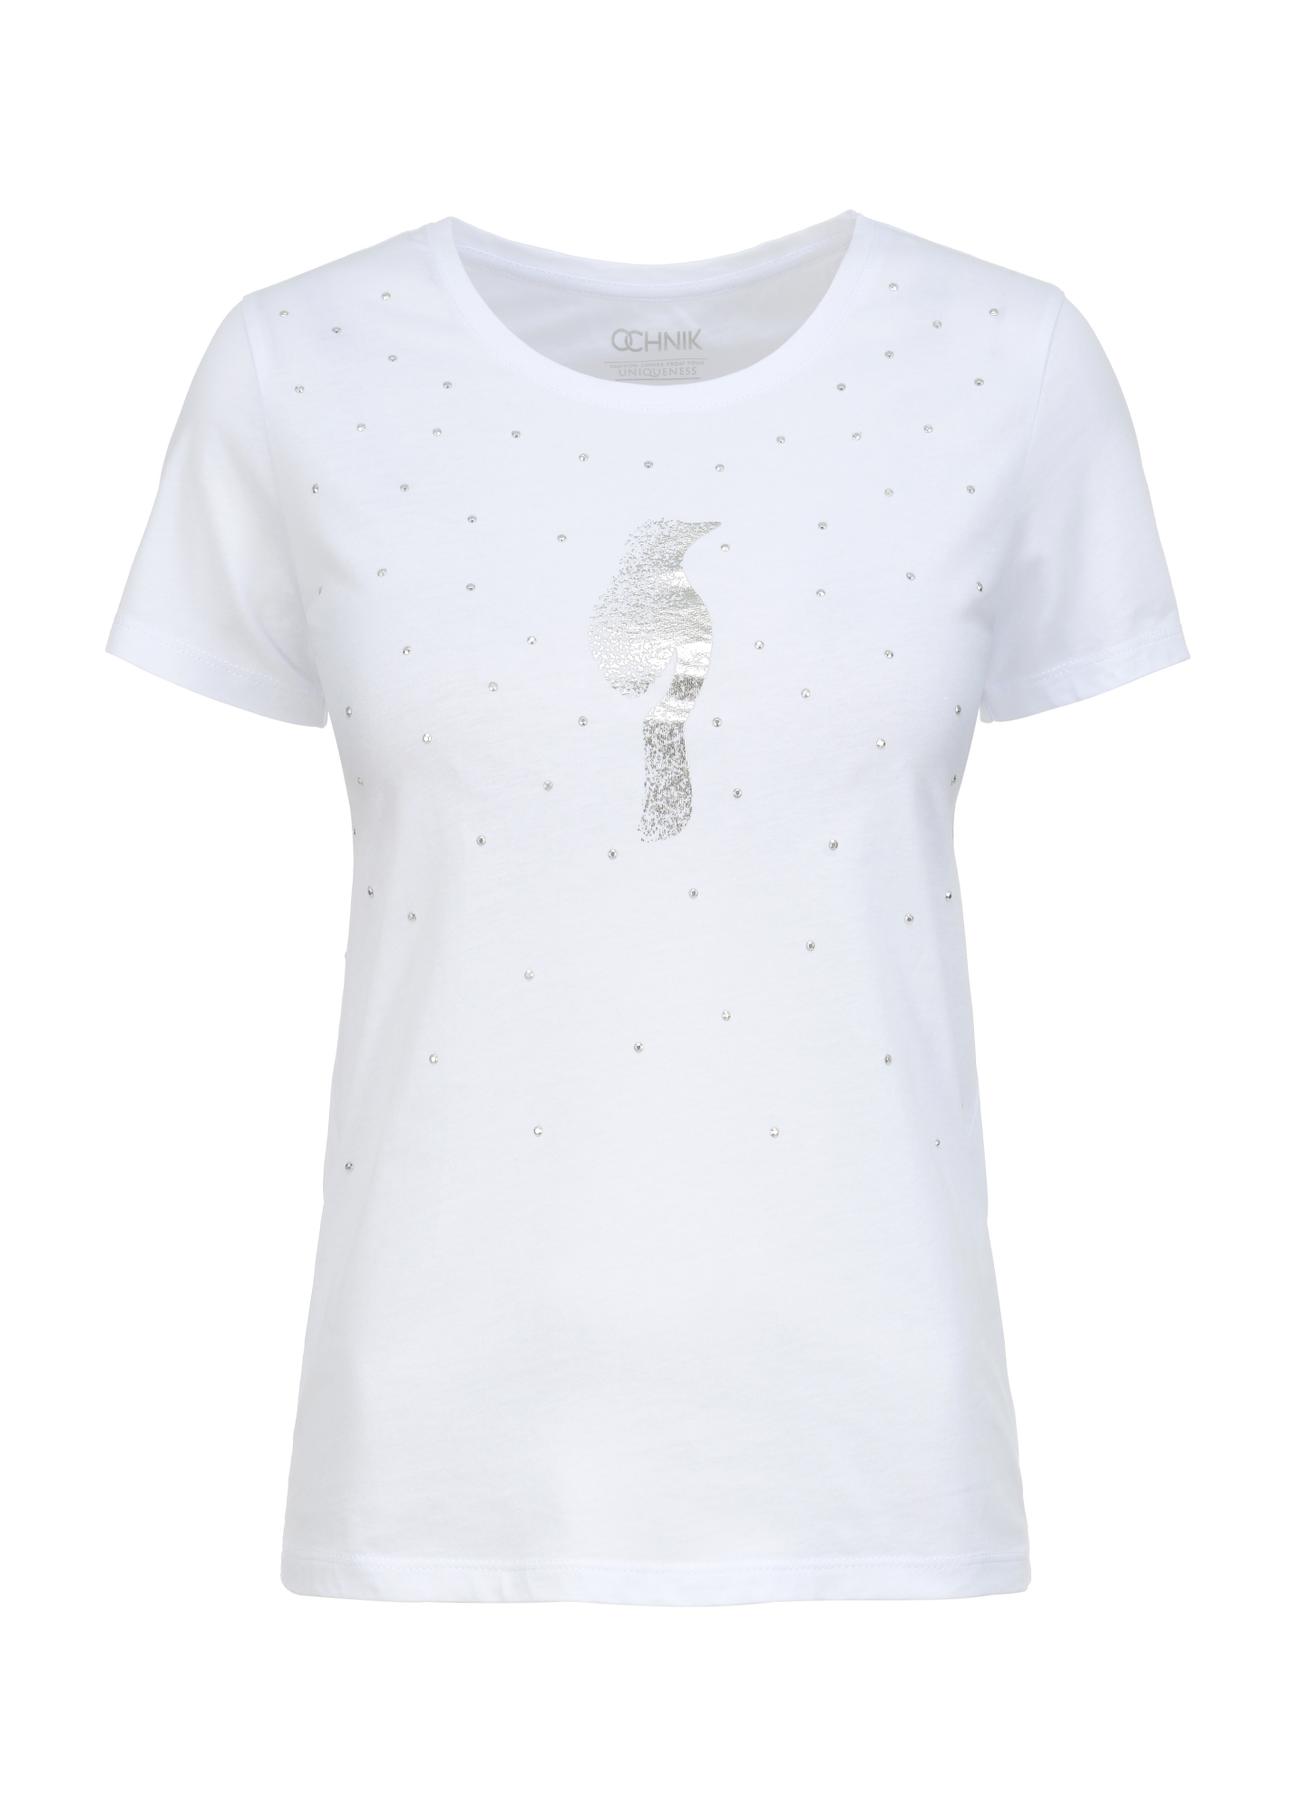 Biały T-shirt damski ze srebrnym logo TSHDT-0110-11(W23)